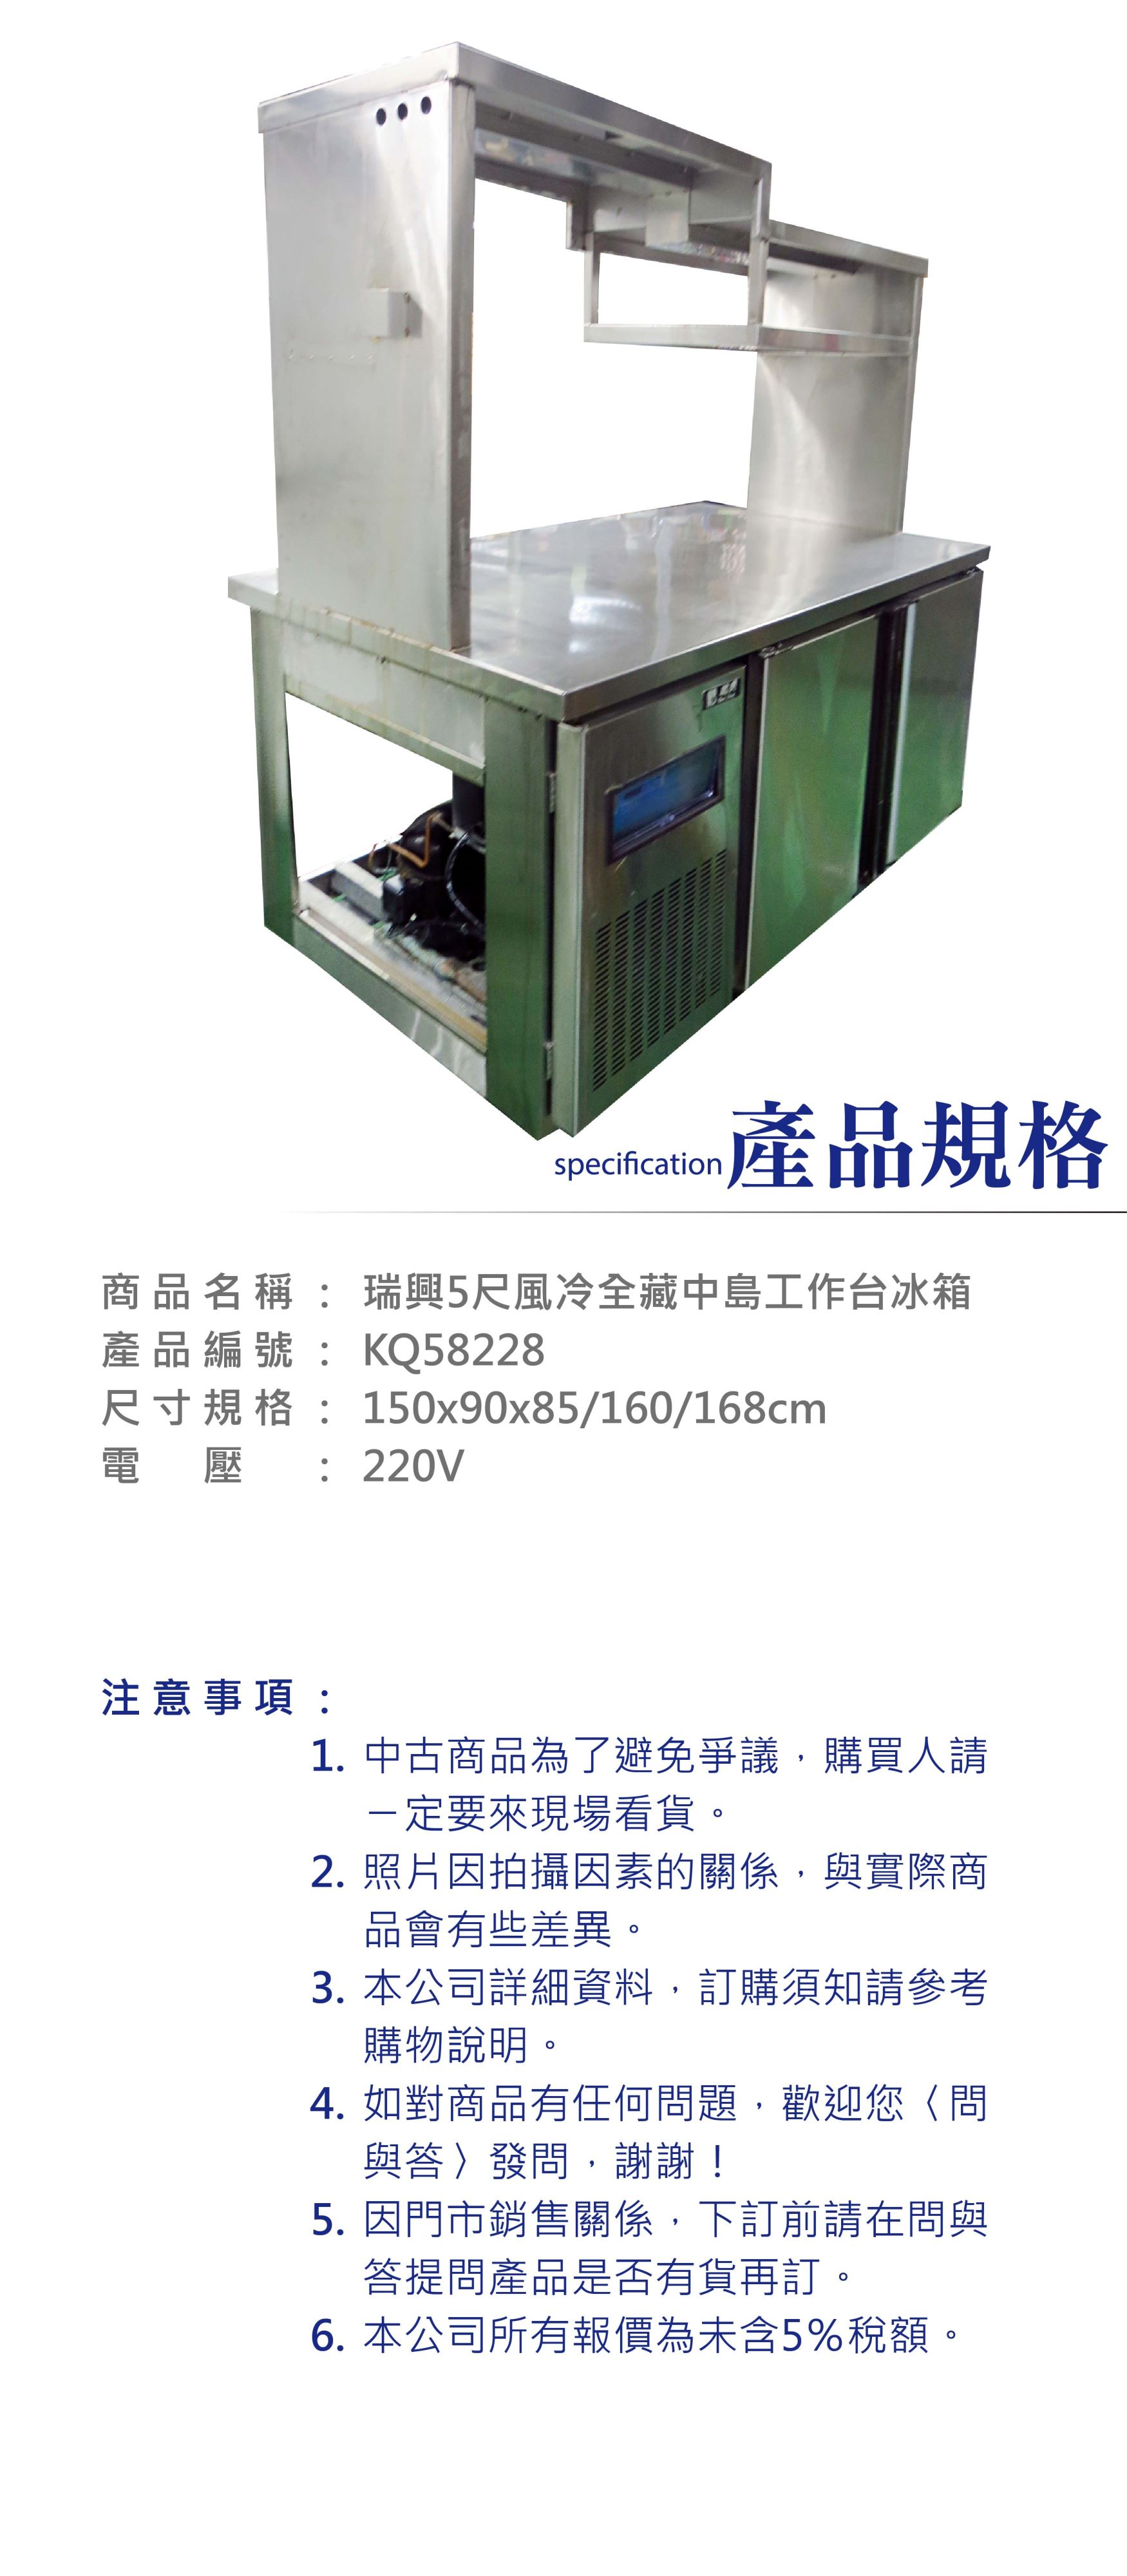 瑞興5尺風冷全藏中島工作台冰箱